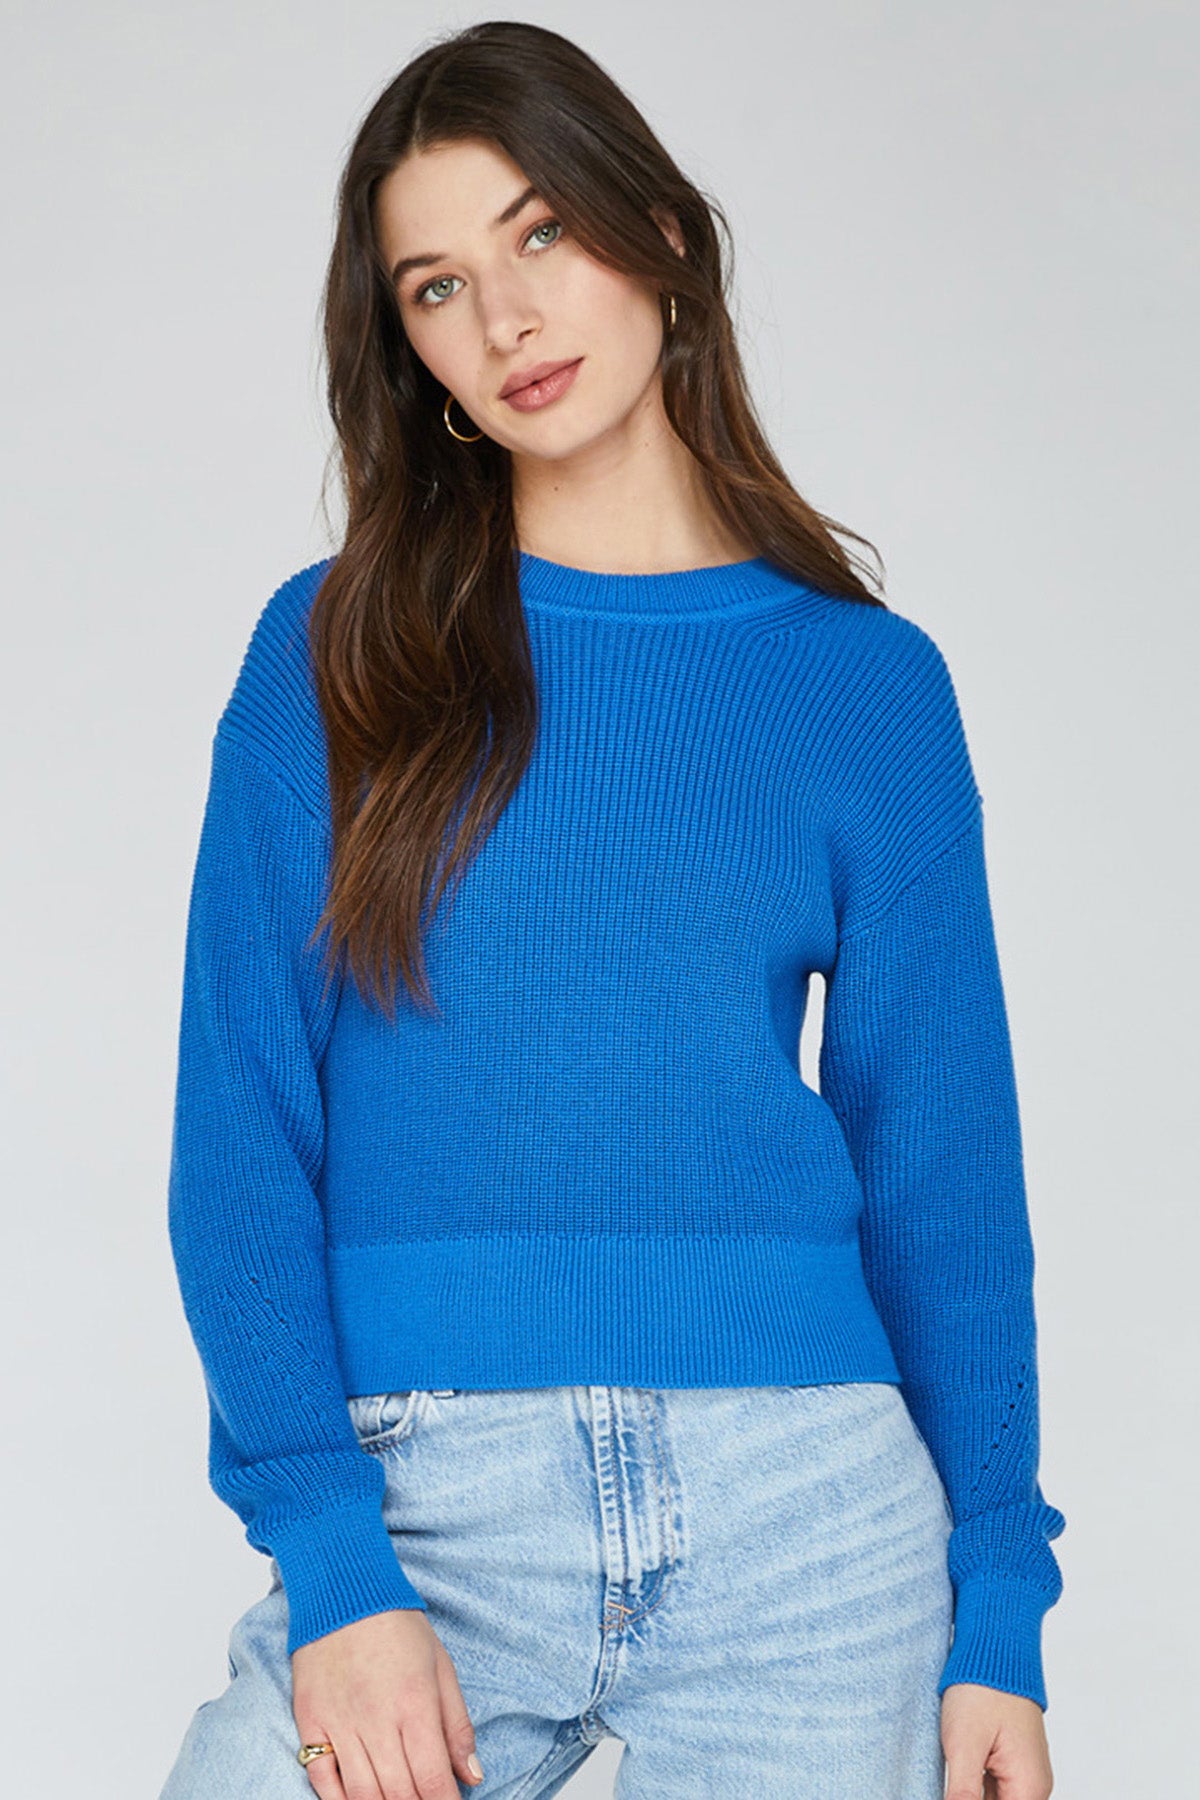 Andie Sweater - Atlantic Blue